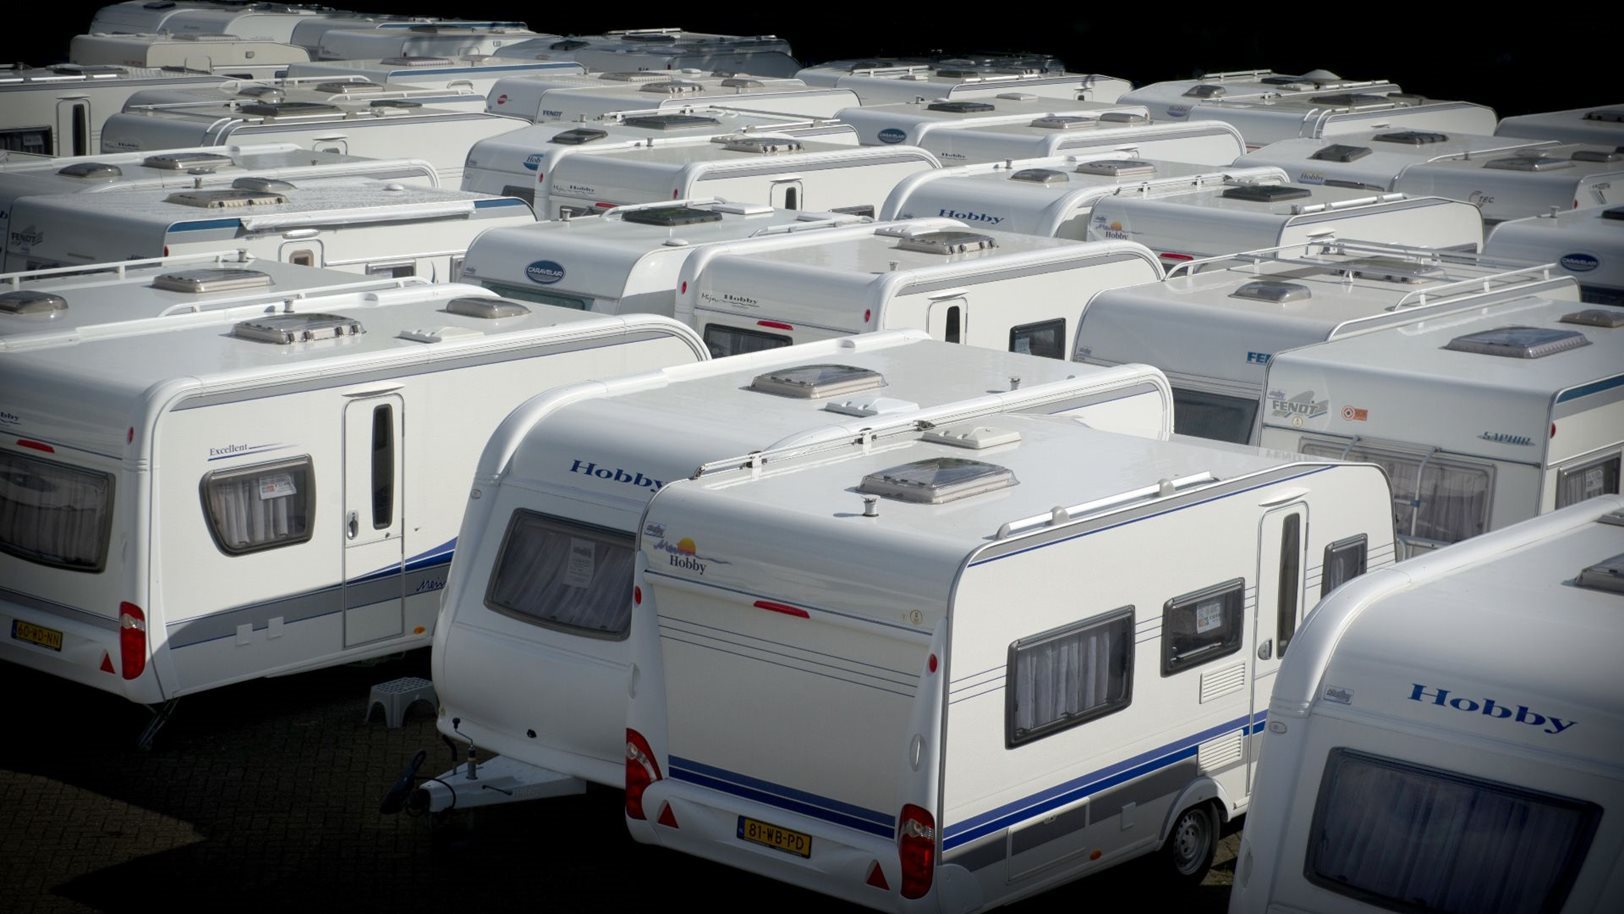 Monteurs moeten bijblijven om kwaliteit van BOVAG onderhoudsbeurt voor caravans en aanhangwagens hoog te houden.